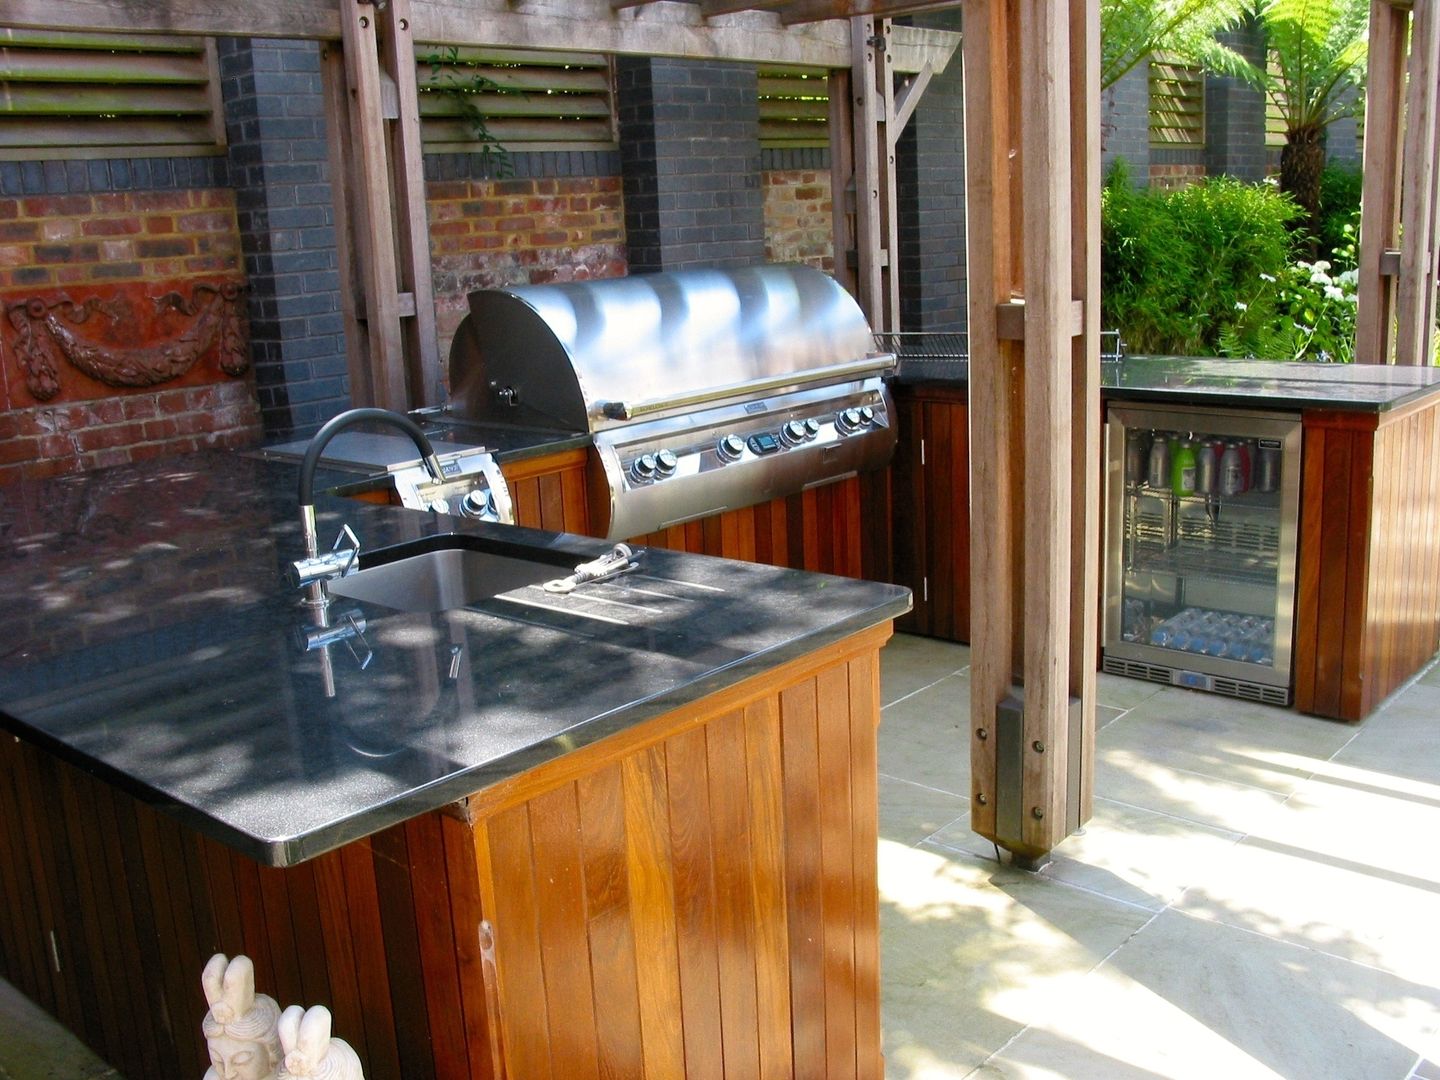 view of sink, BBQ and fridge wood-fired oven Jardines de estilo clásico